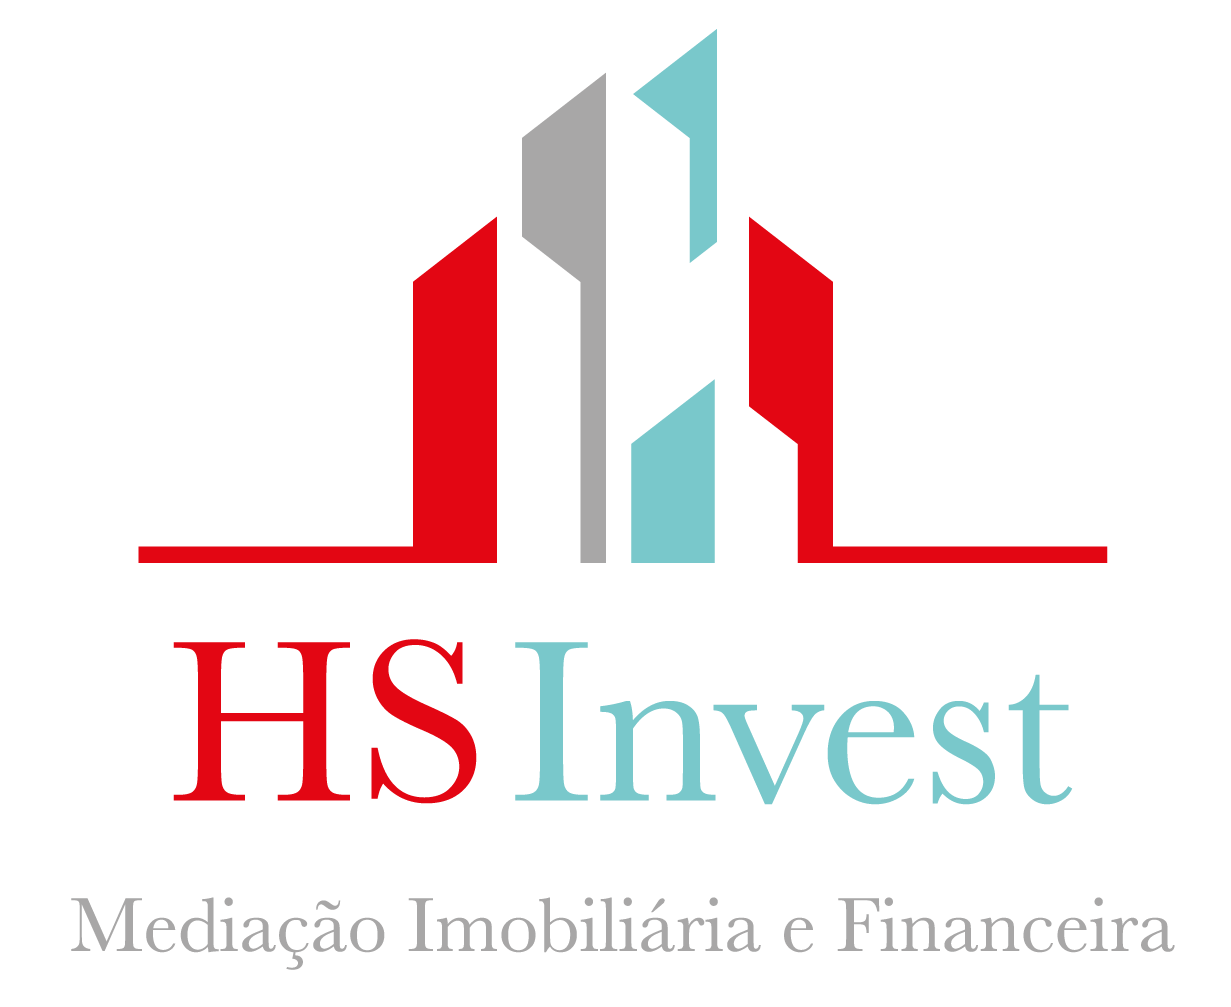 HSInvest Mediação Imobiliária e Financeira